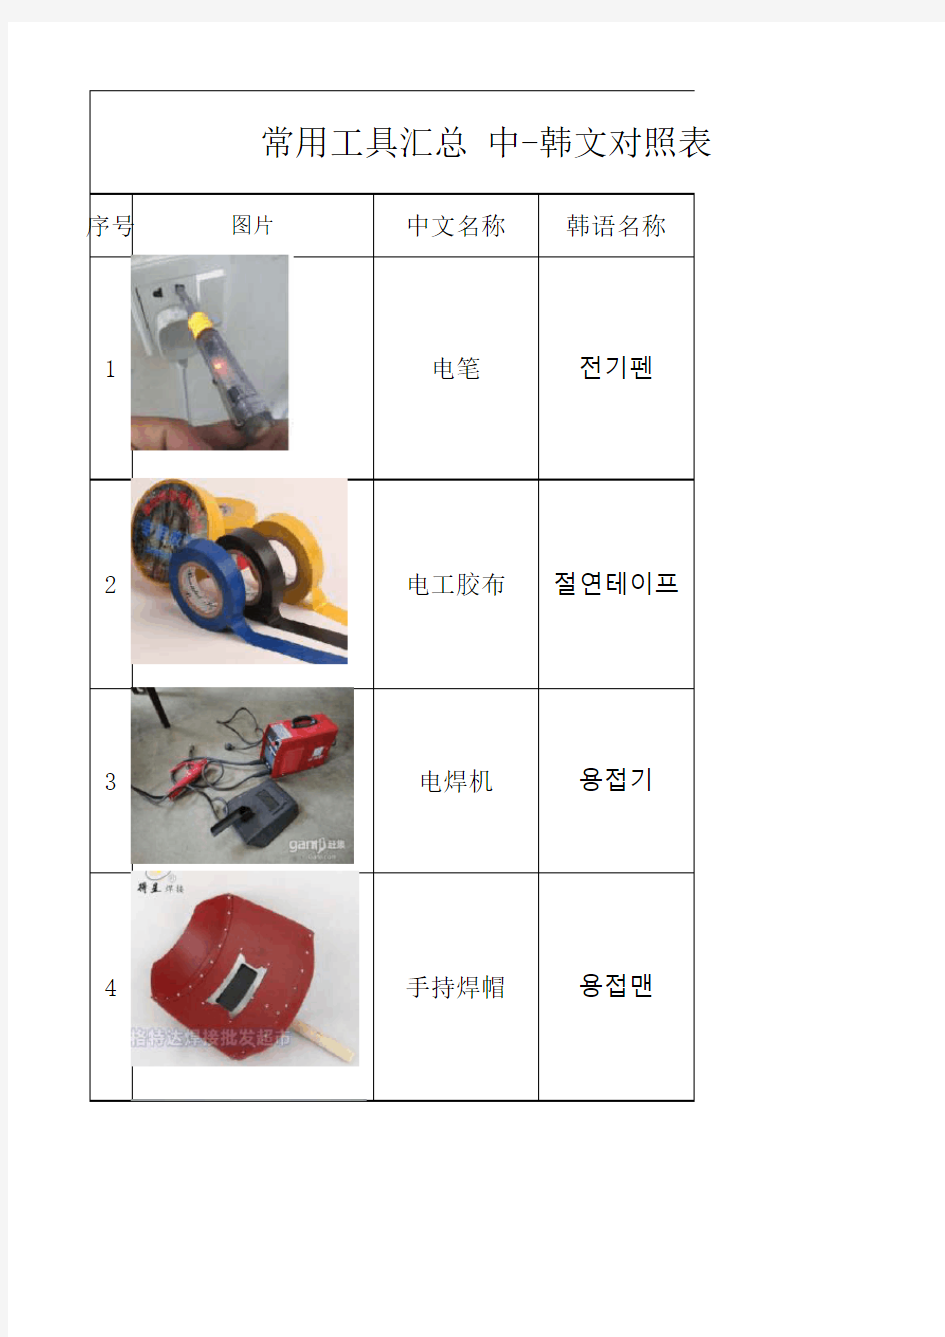 常用工具中韩文对应表